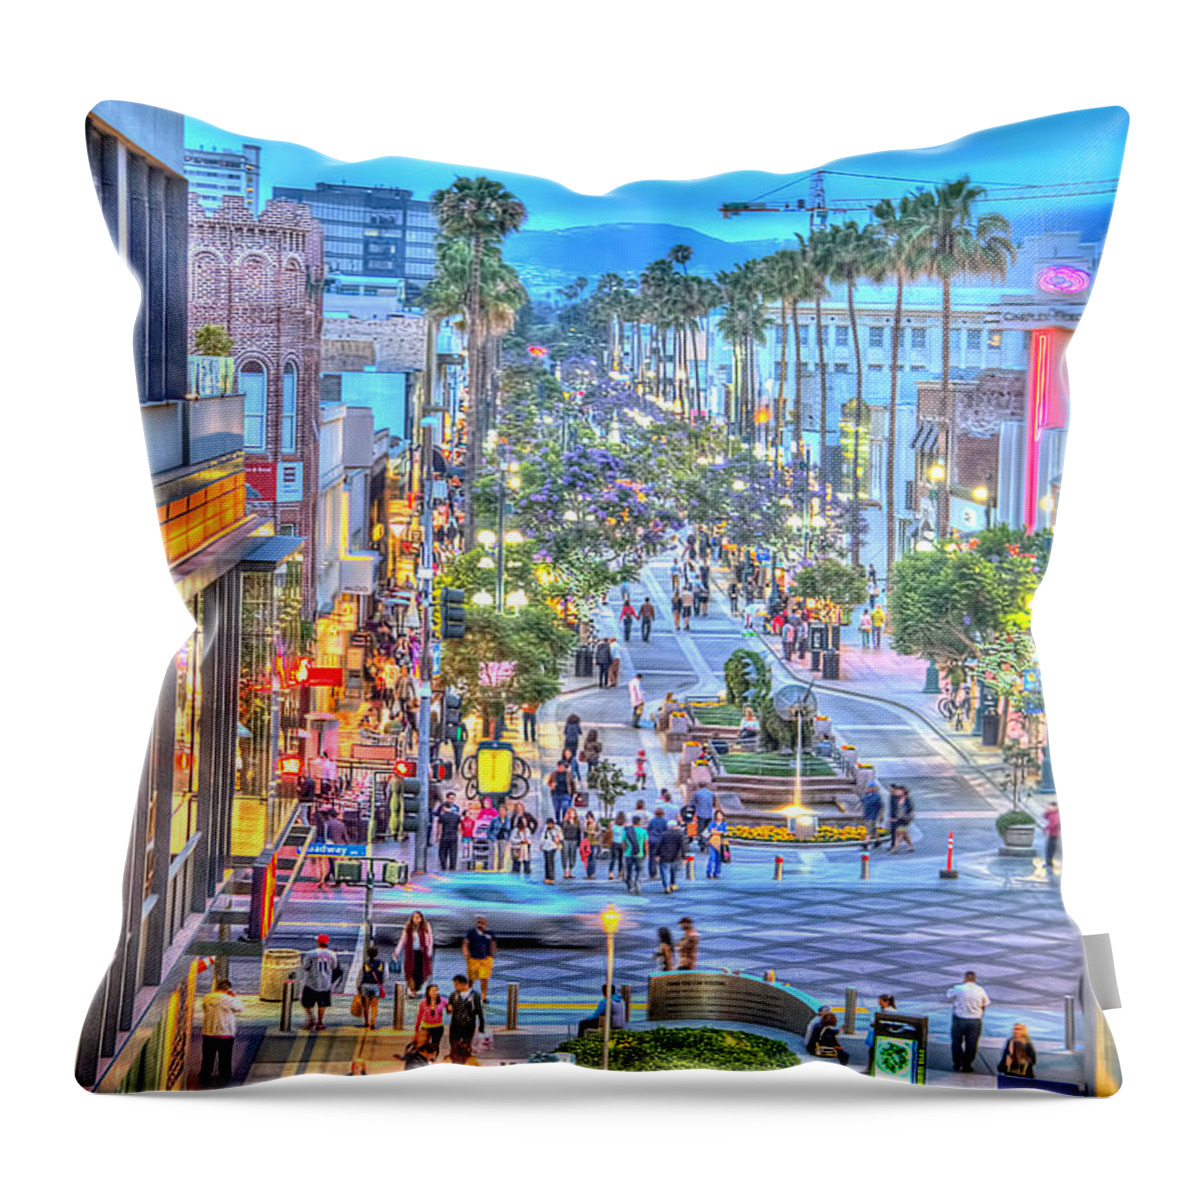 Third Street Promenade Throw Pillow featuring the photograph Third Street Promenade by Chuck Staley